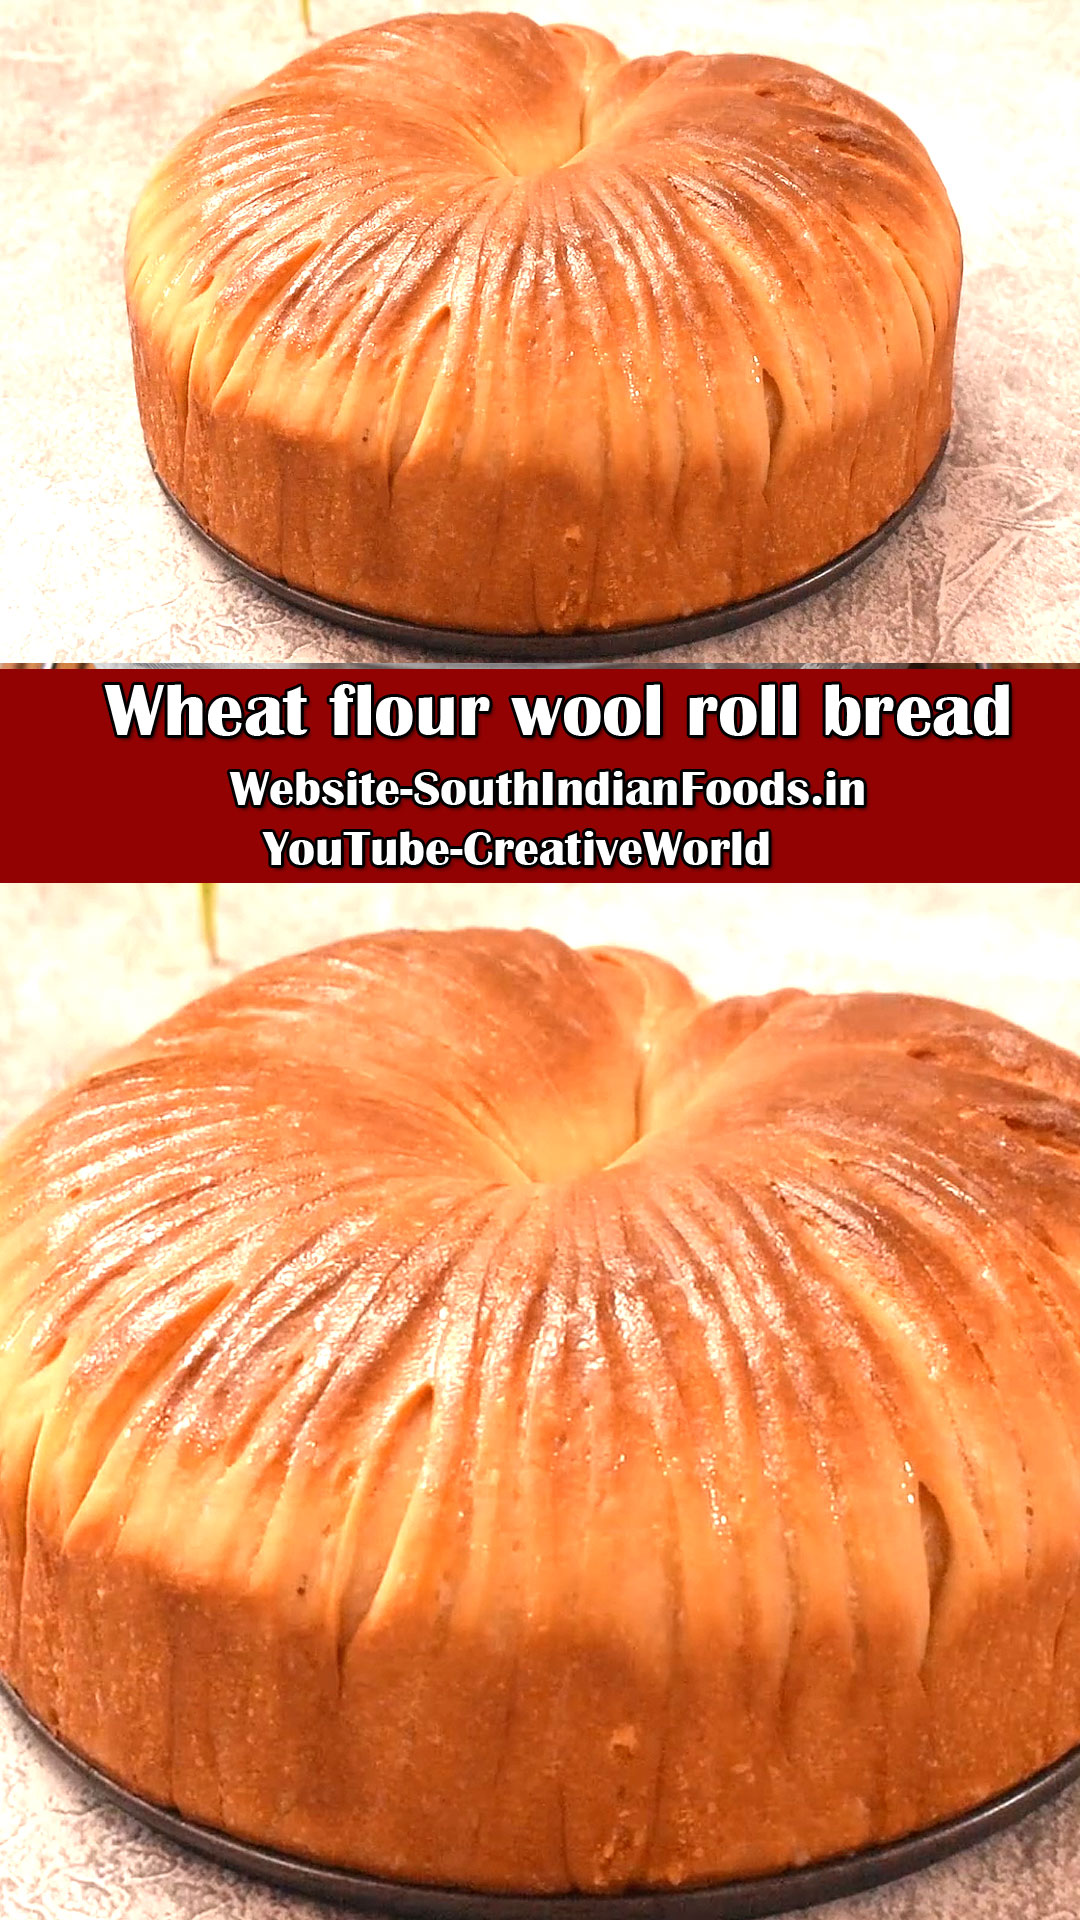  Wheat flour wool roll brea